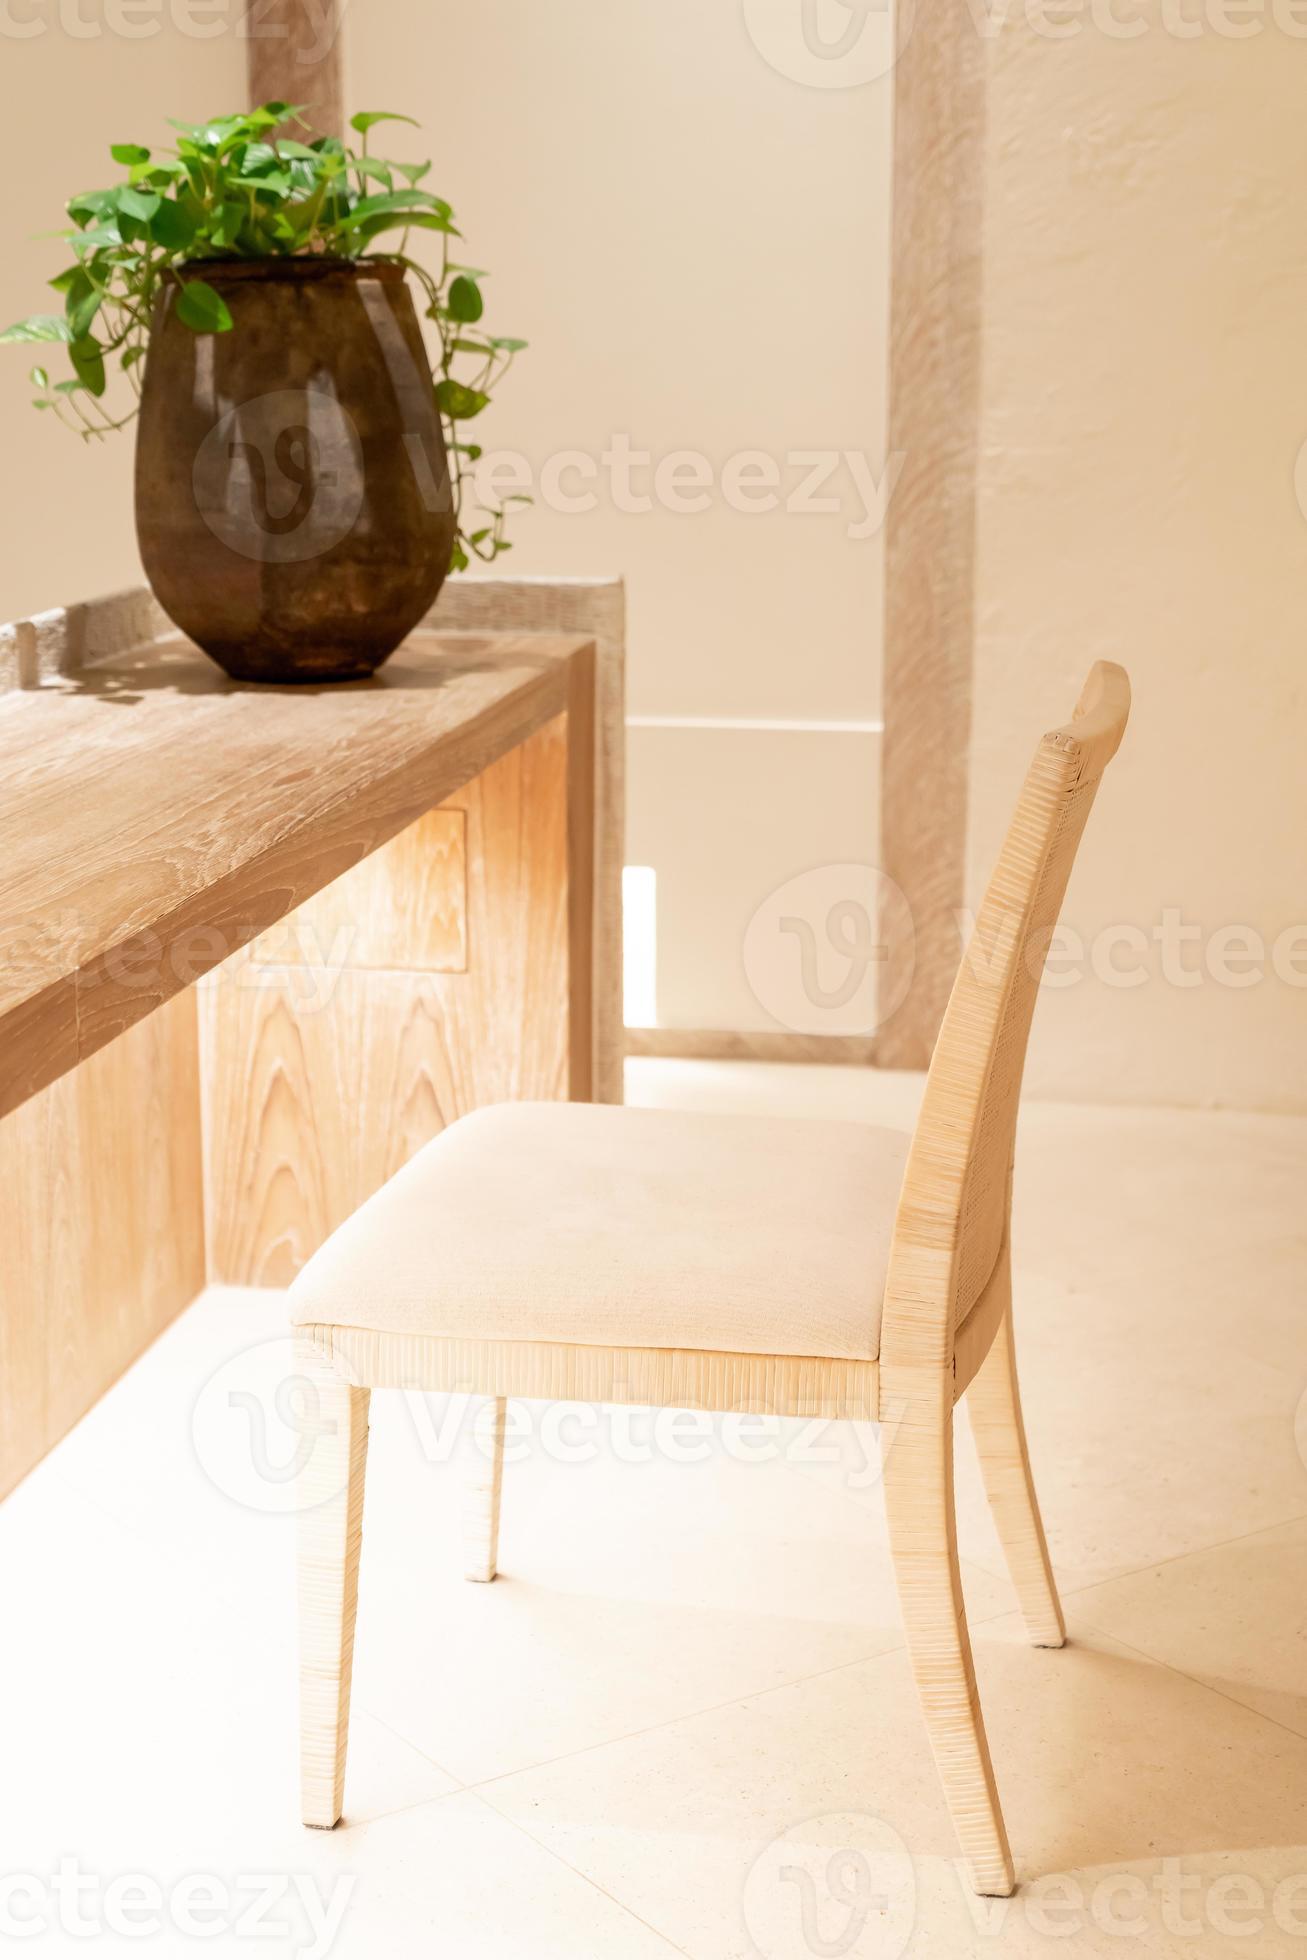 hermosa silla de madera con luz cálida decorar en una habitación foto